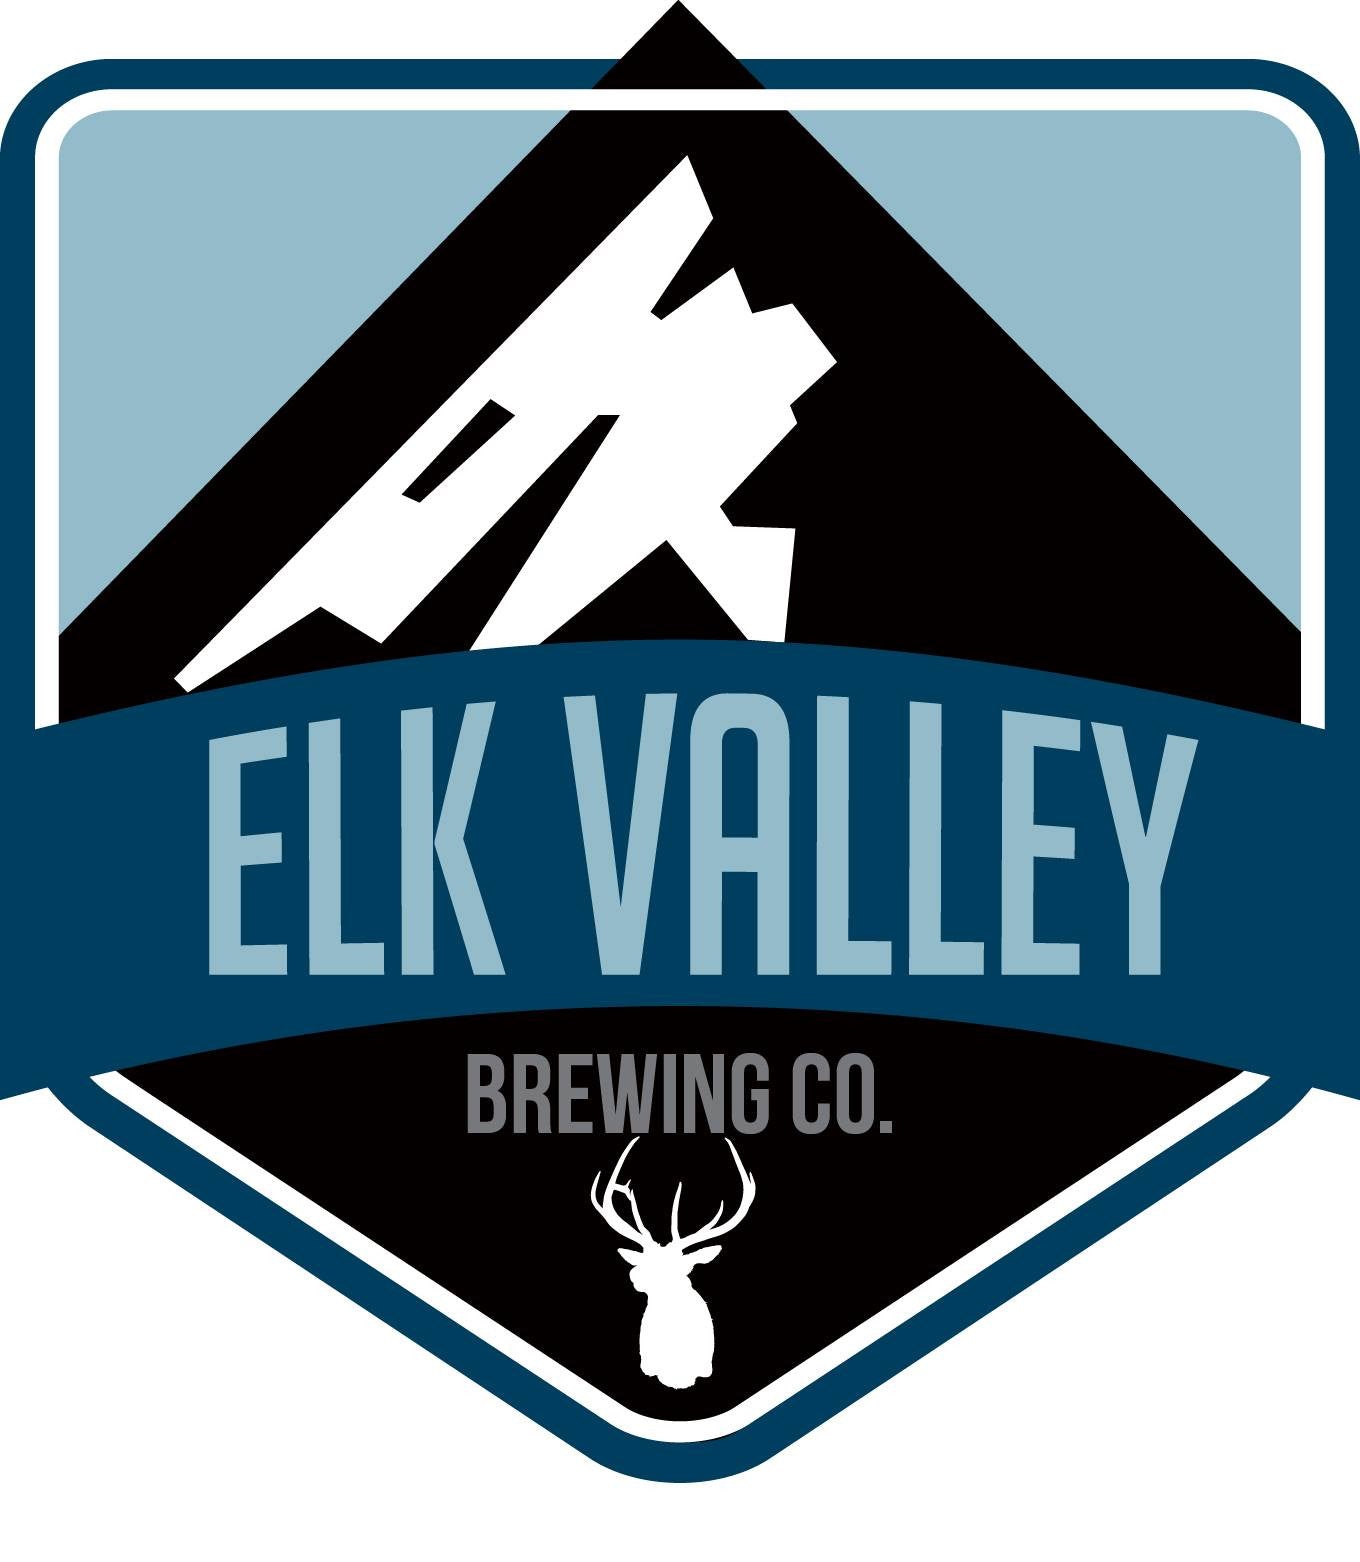 Partner Spotlight: Elk Valley Brewing Company